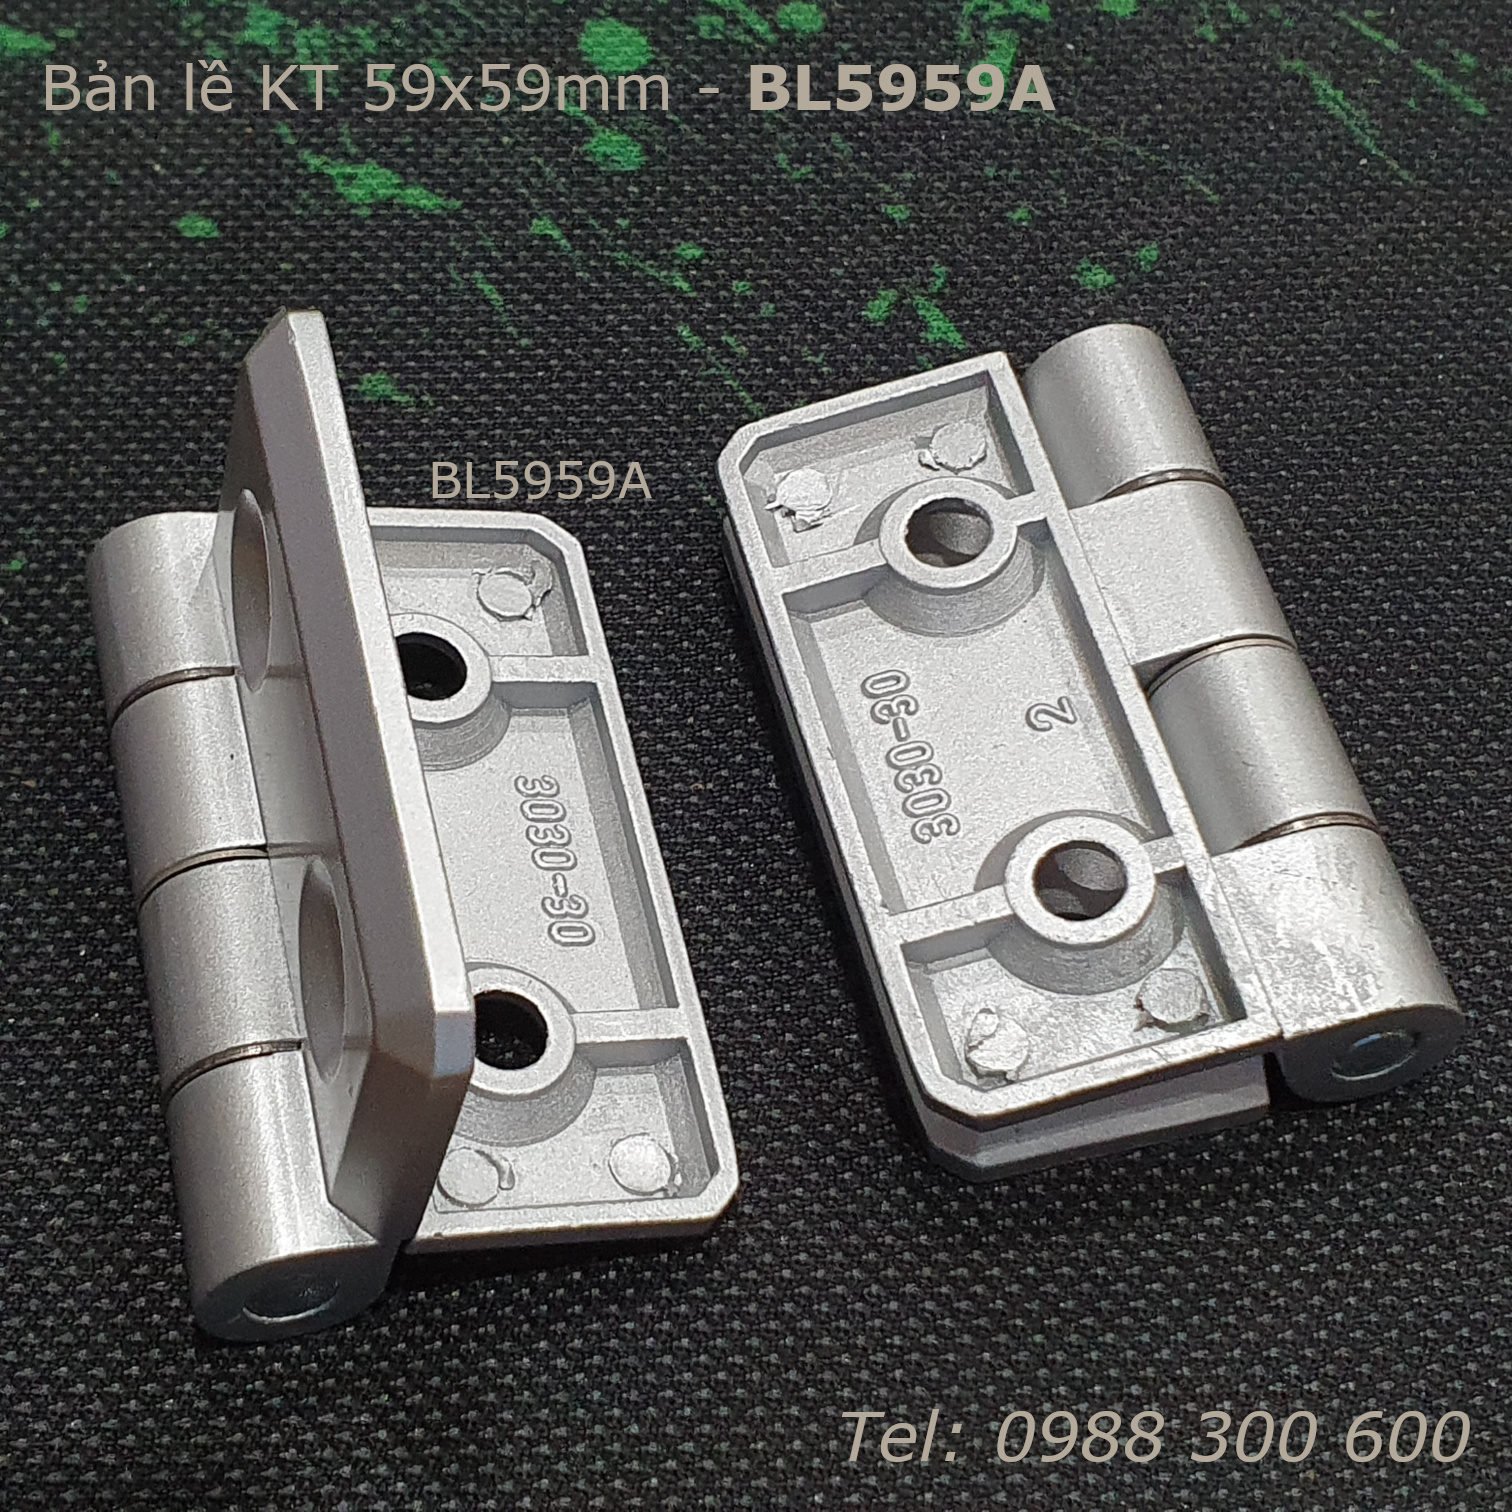 Bản lề hợp kim kẽm KT 59x59, dày 5mm - BL5959A